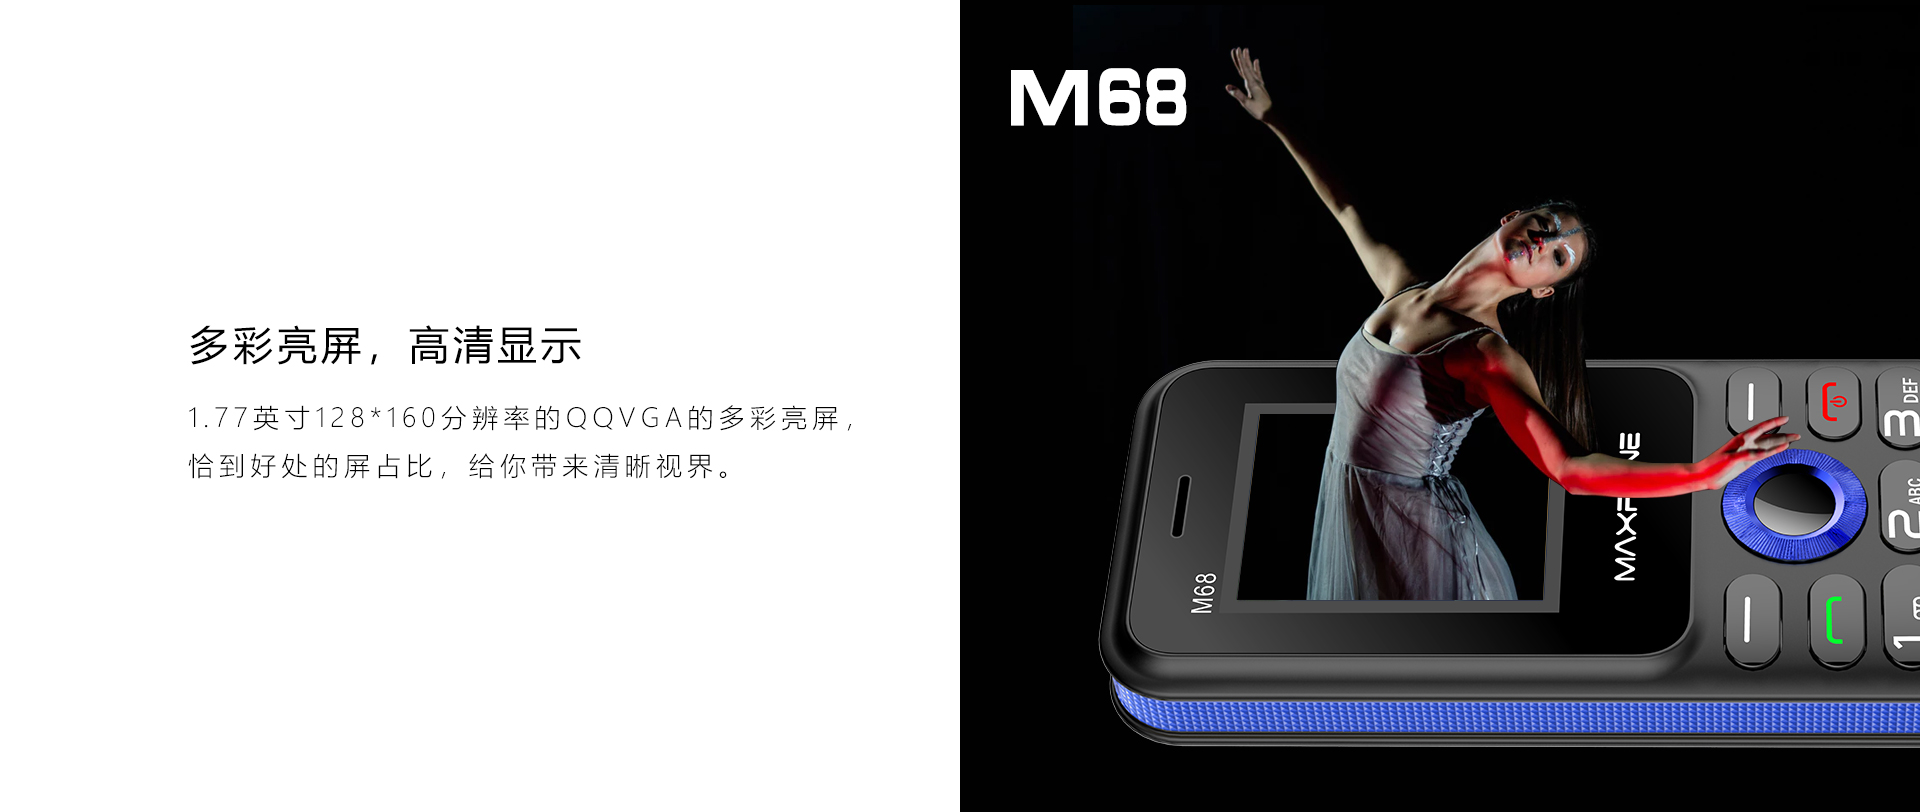 M68_M88详情页(中文版）_04